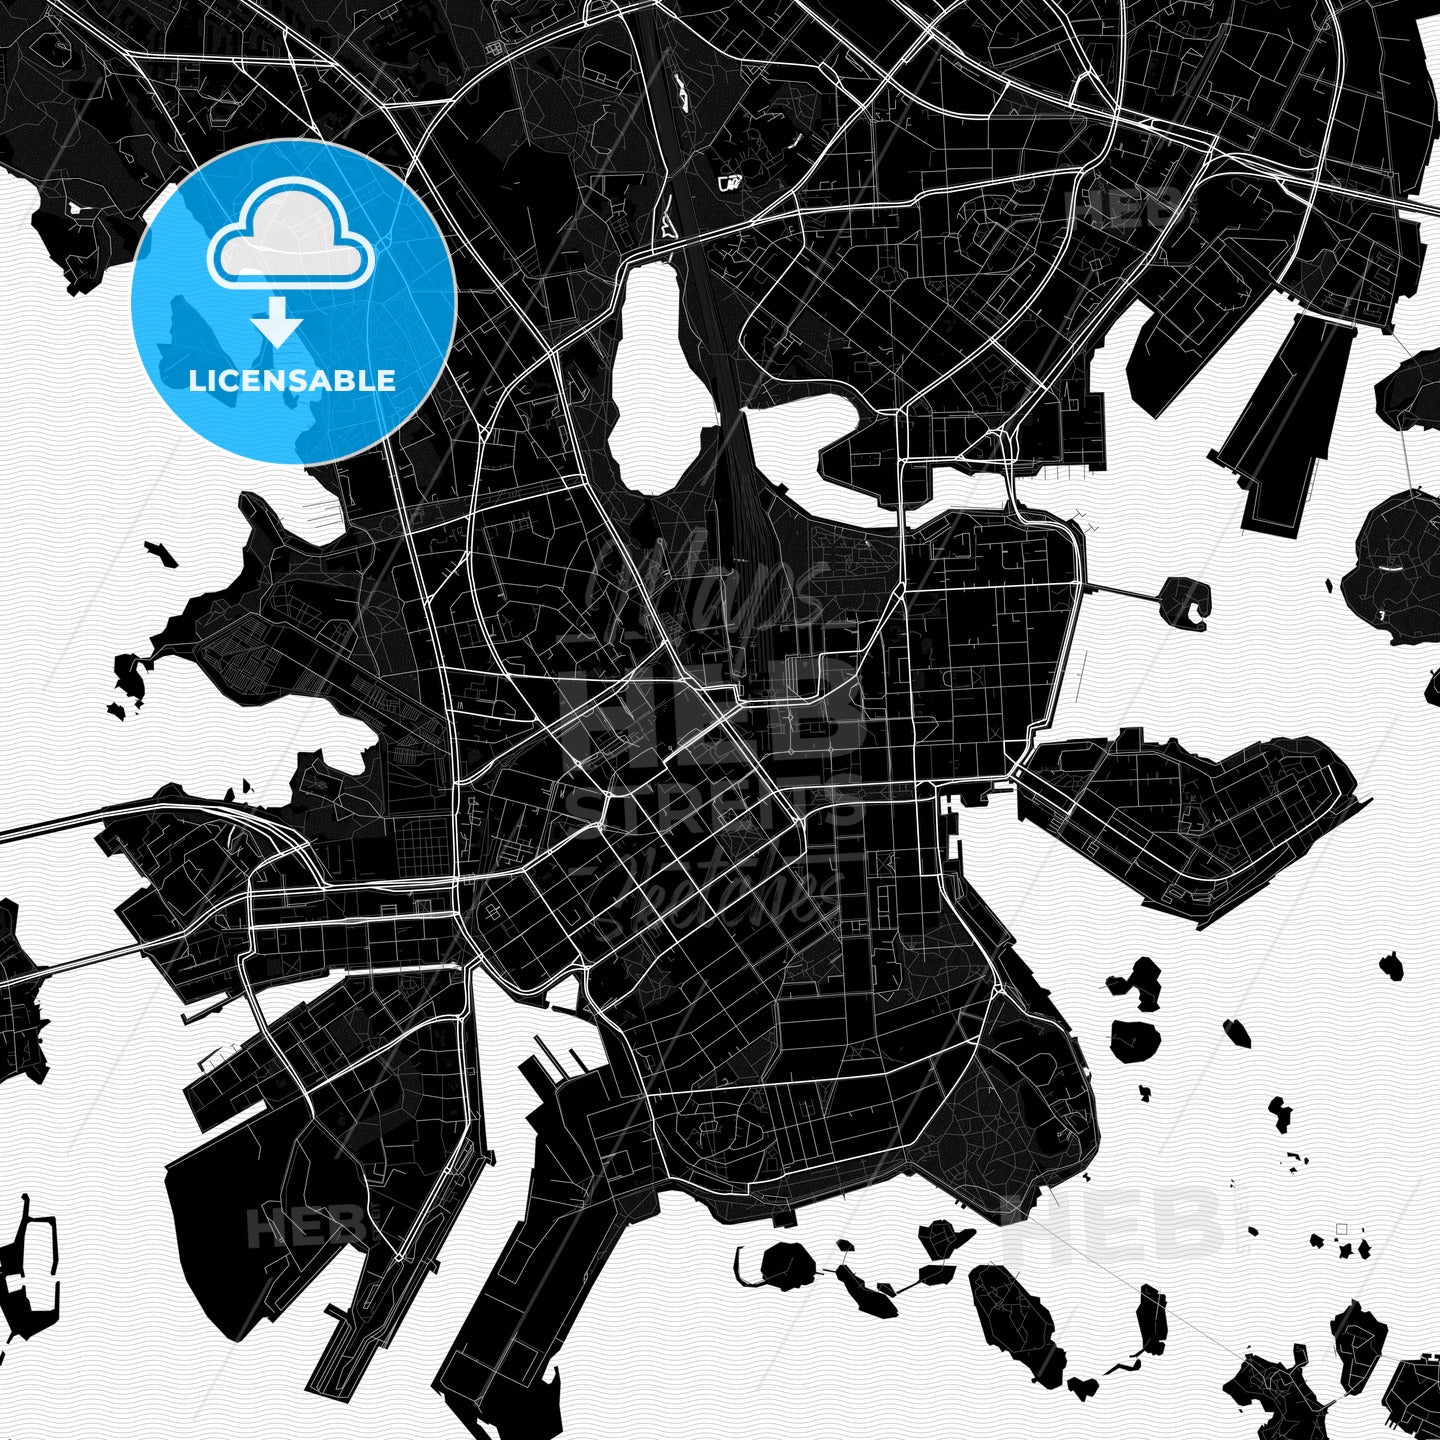 Helsinki, Finland PDF map